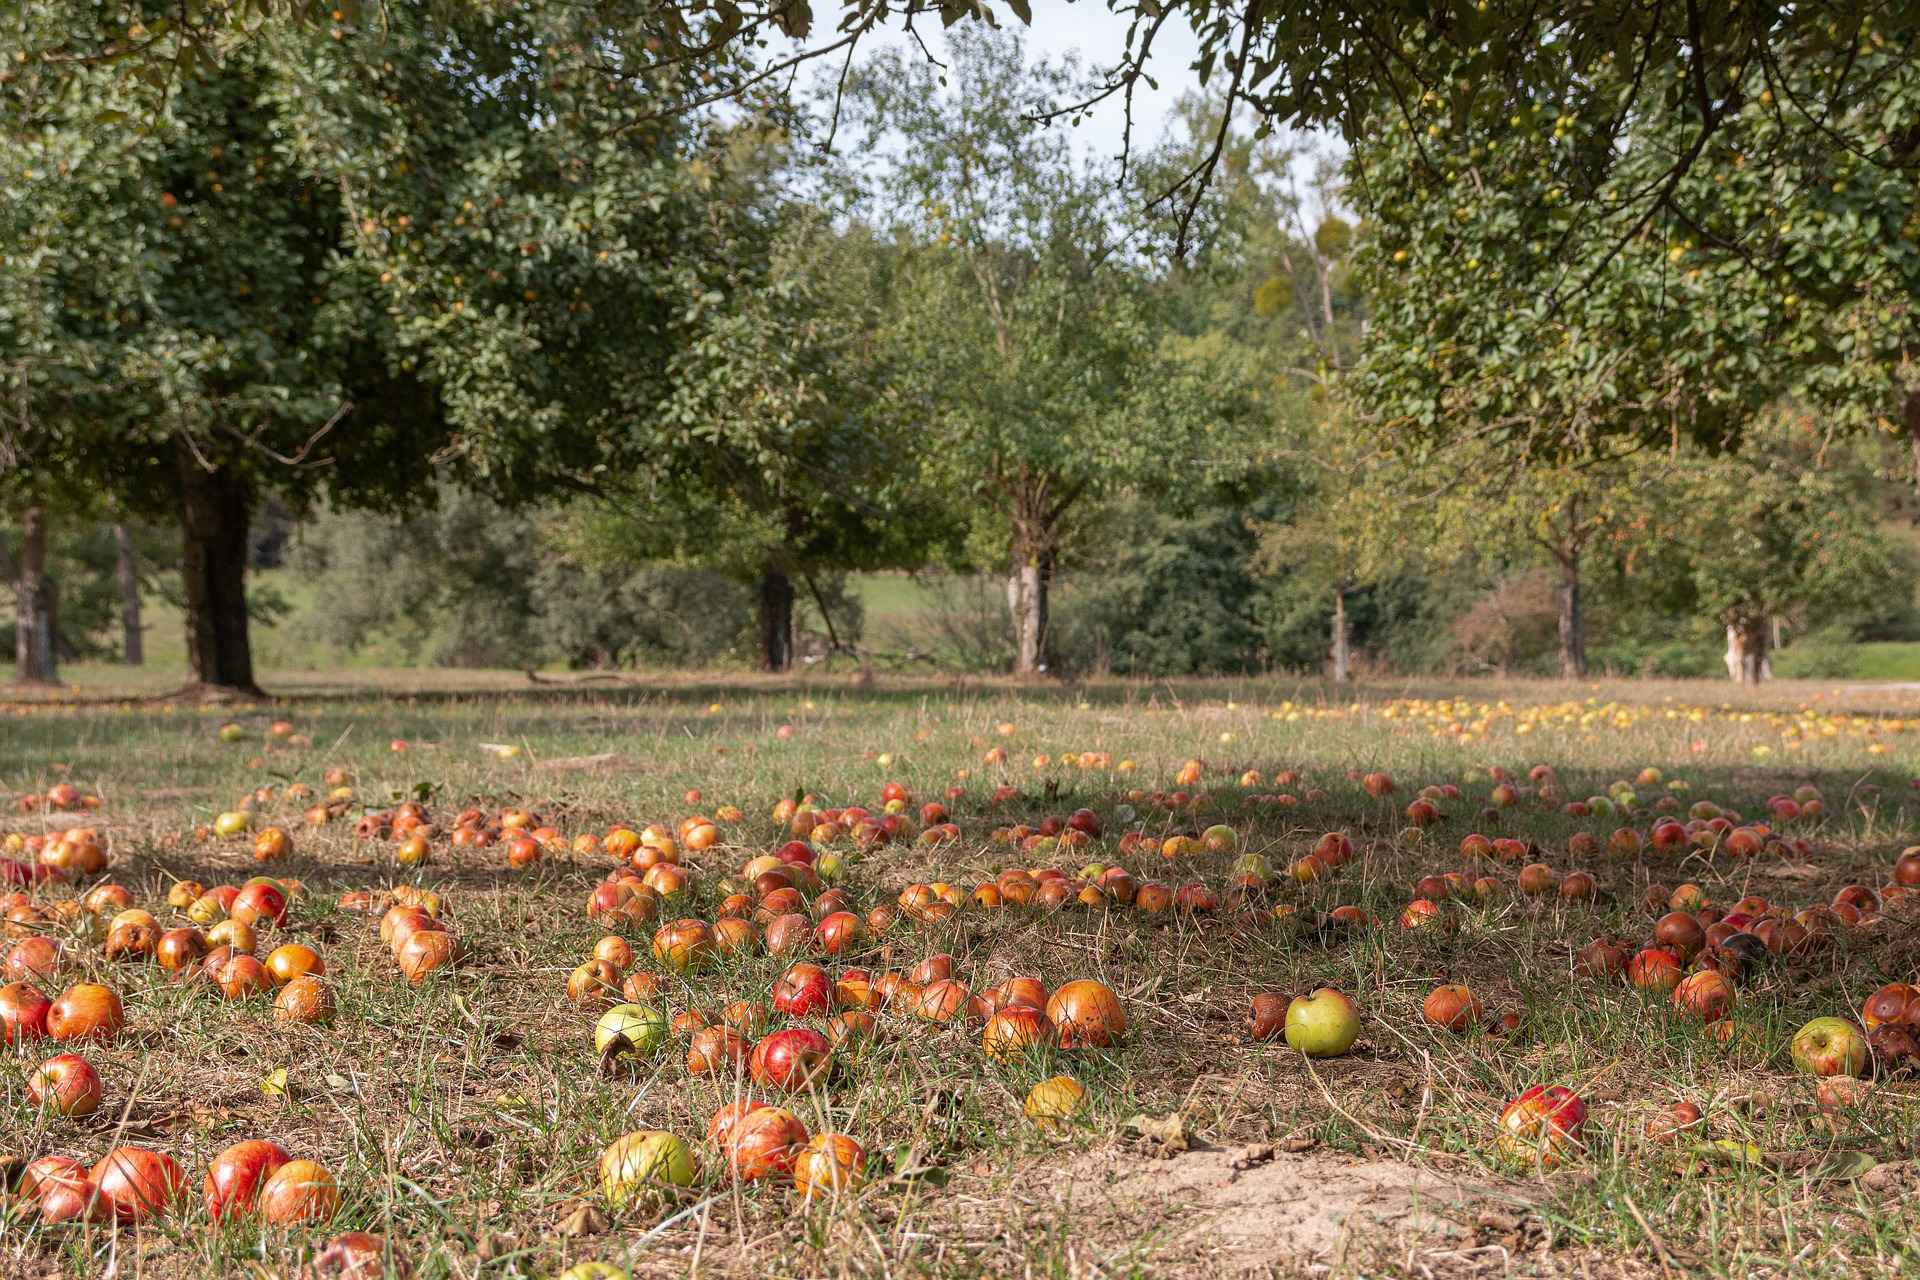 Schutzgemeinschaft Rohrer Weg e.V. - Save the fields and orchards!